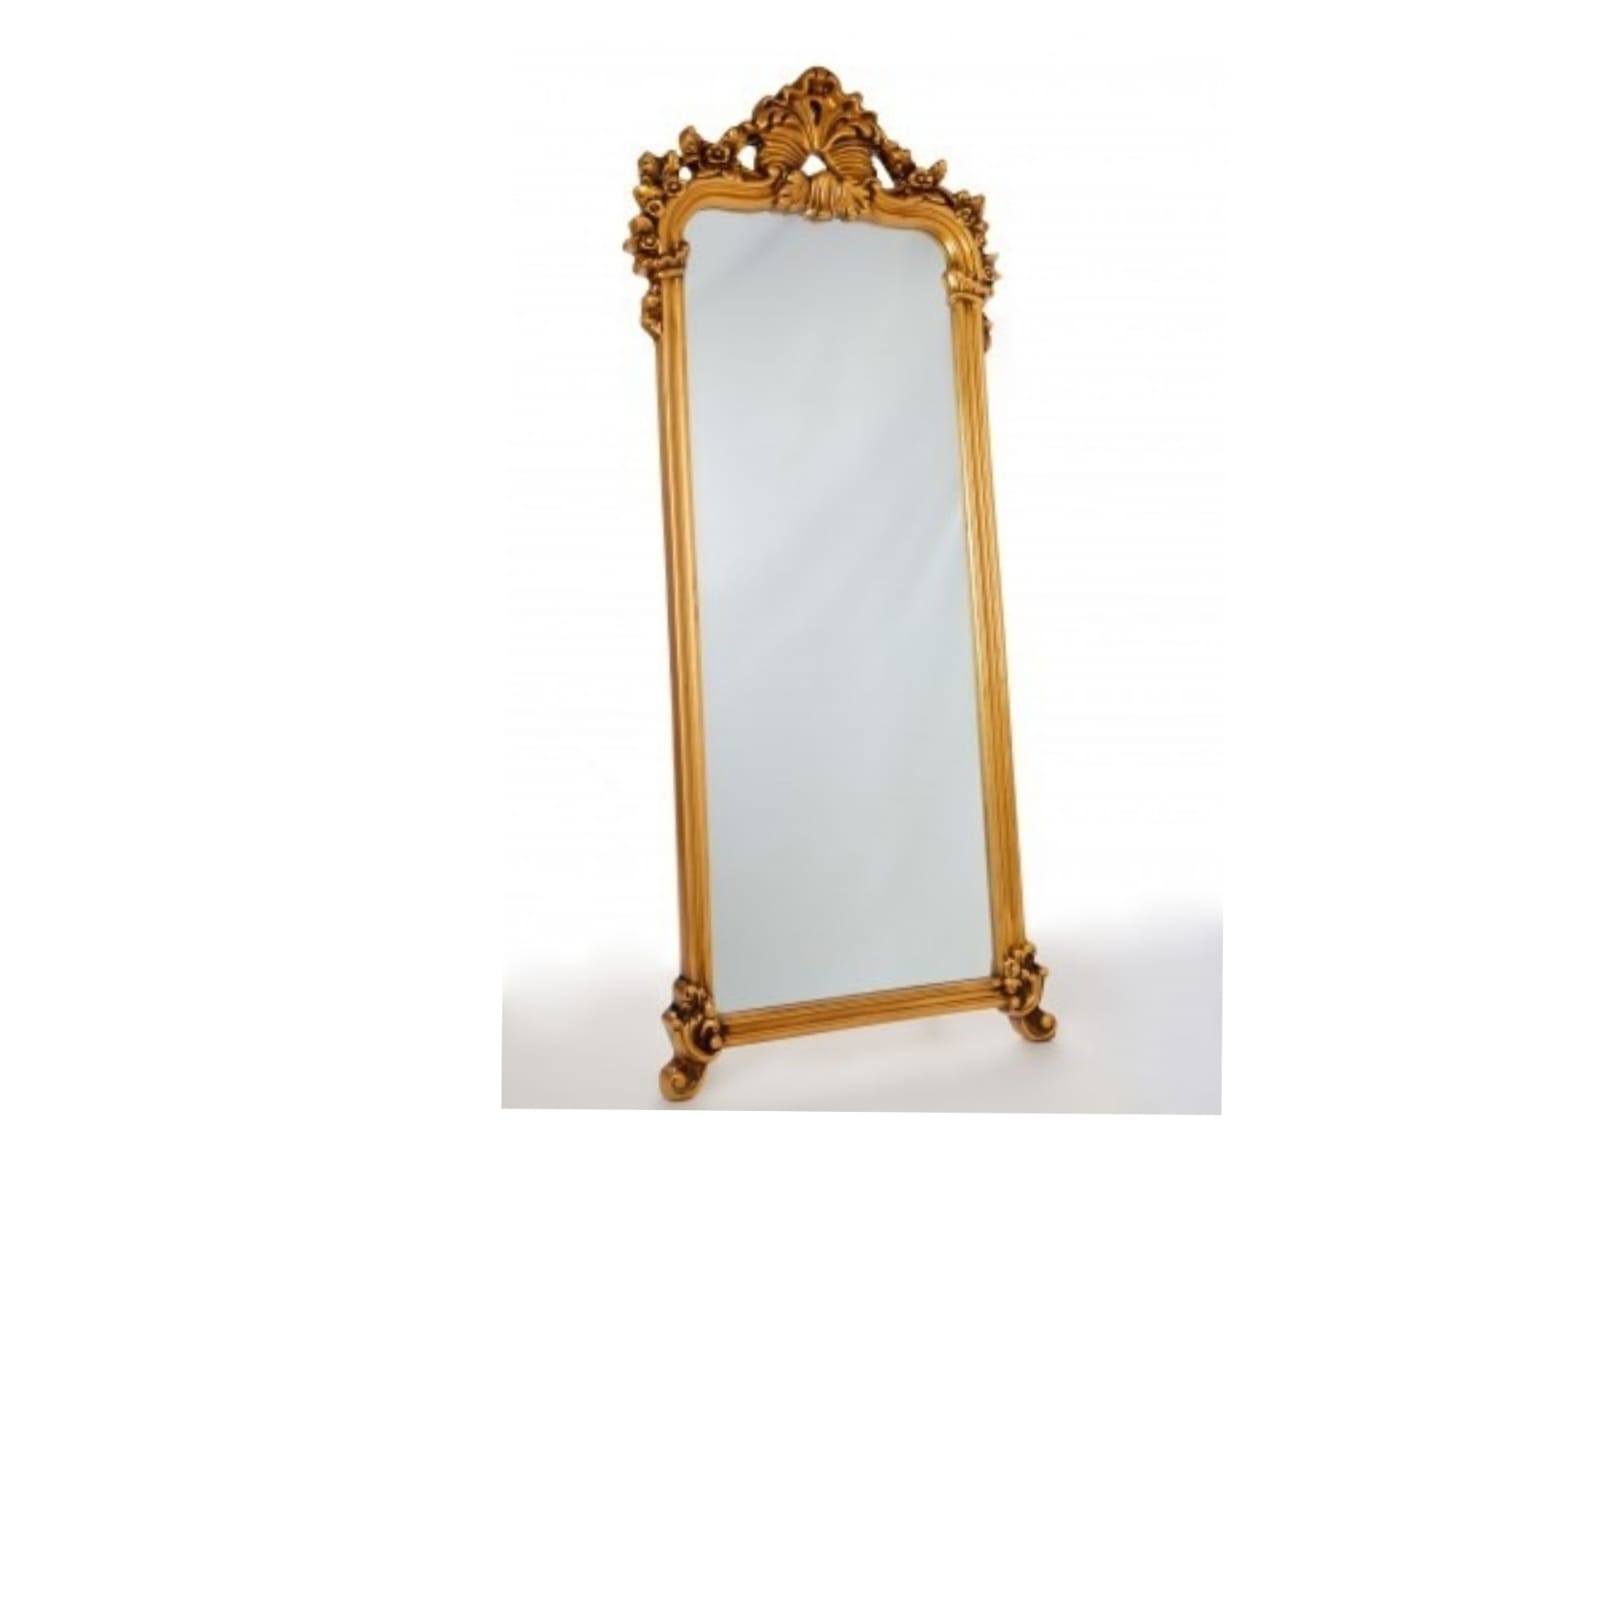 REF 4460 - Espelho Dourado Resina 0,70 x 1,70 Cm